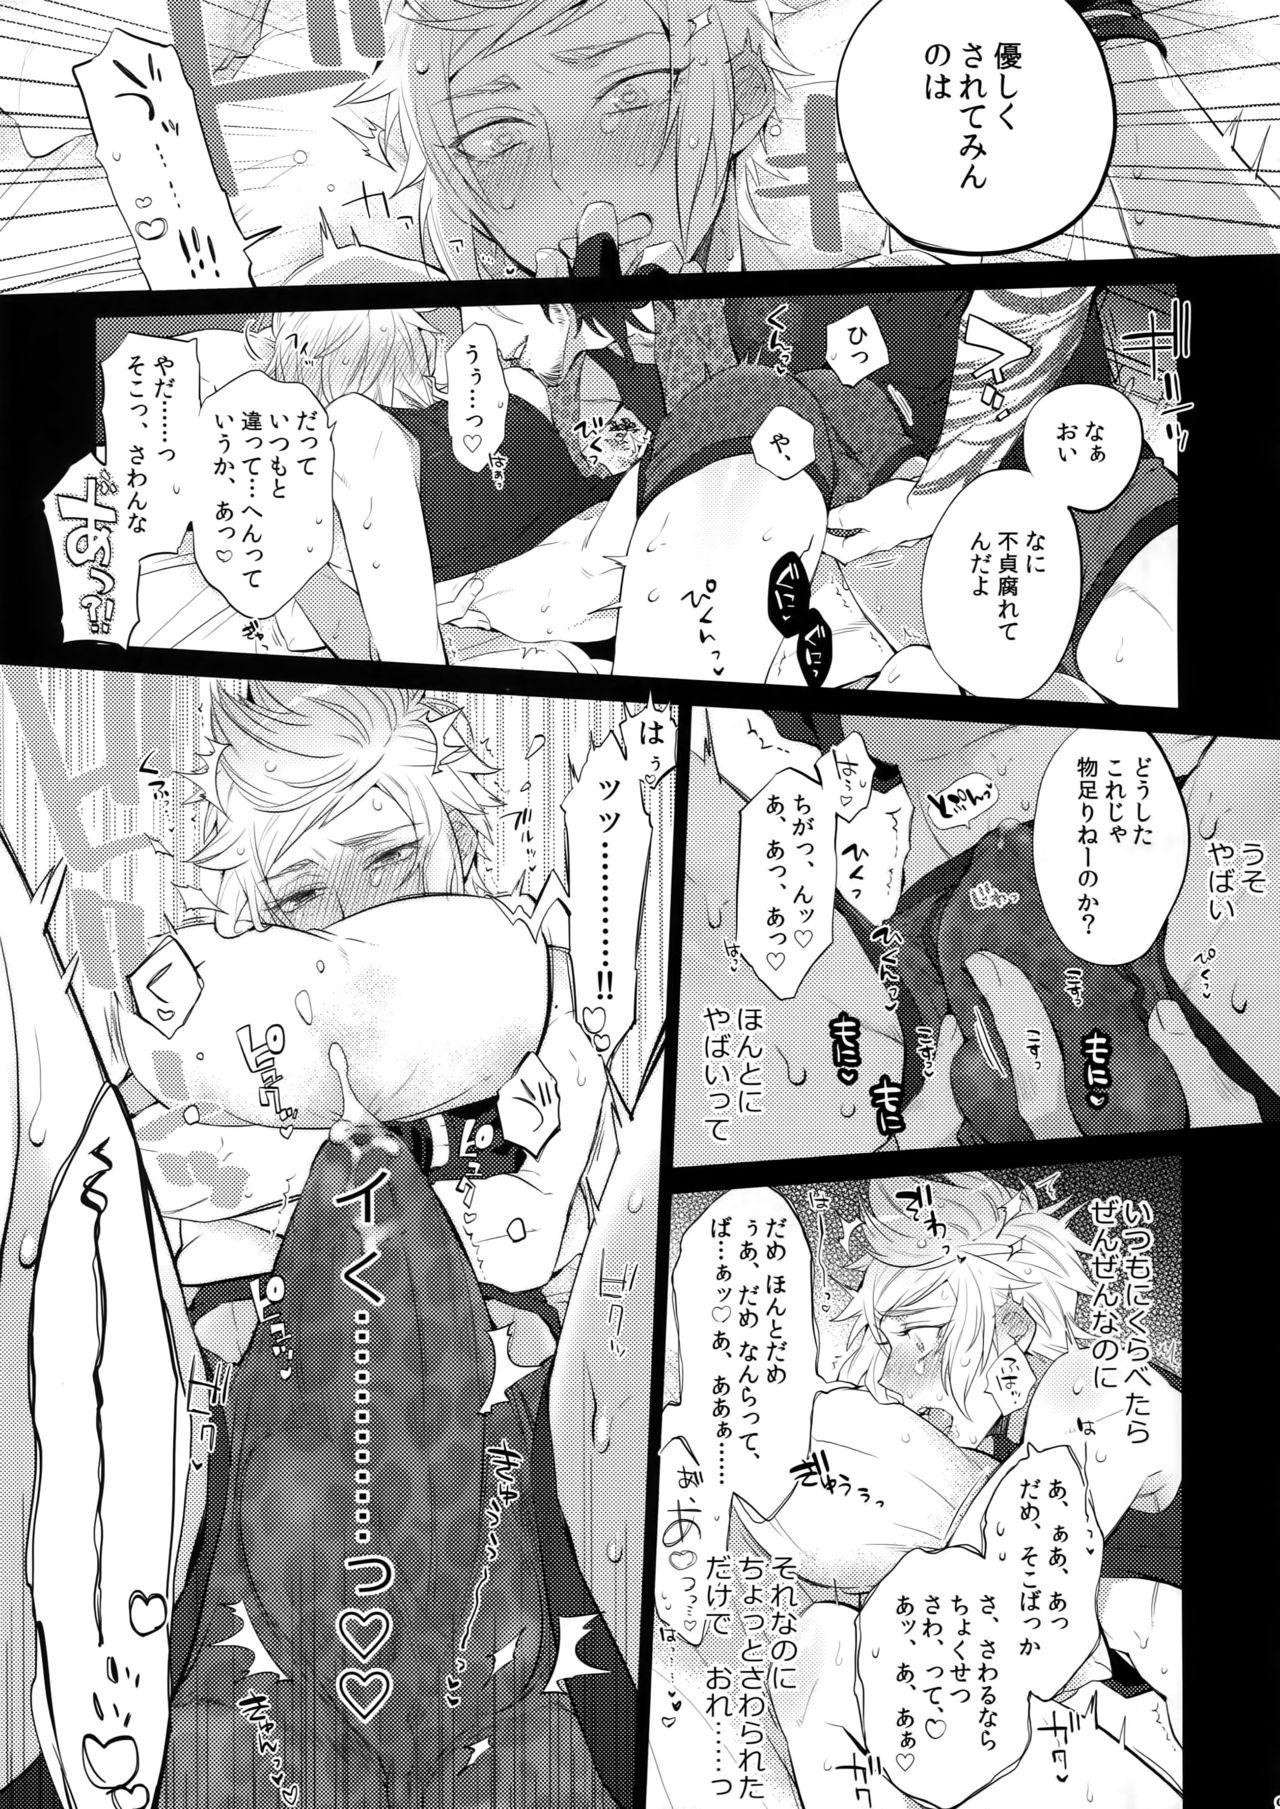 Swallowing Tonari no Shibafu wa LOOKIN' GOOD - Final fantasy xv Bang Bros - Page 8